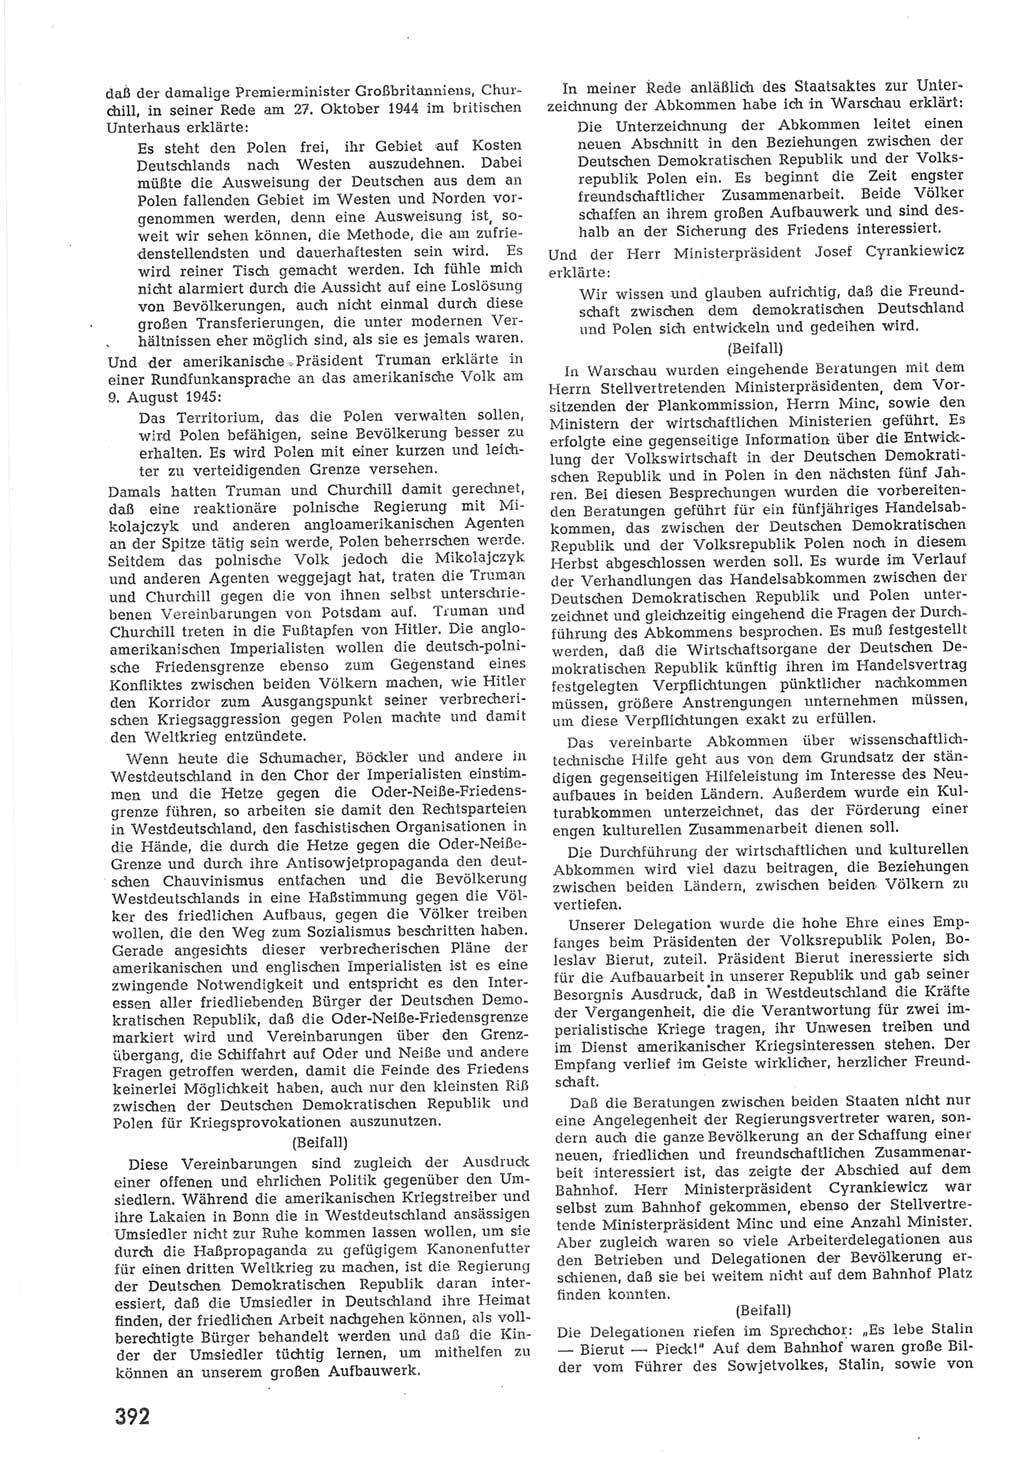 Provisorische Volkskammer (VK) der Deutschen Demokratischen Republik (DDR) 1949-1950, Dokument 410 (Prov. VK DDR 1949-1950, Dok. 410)